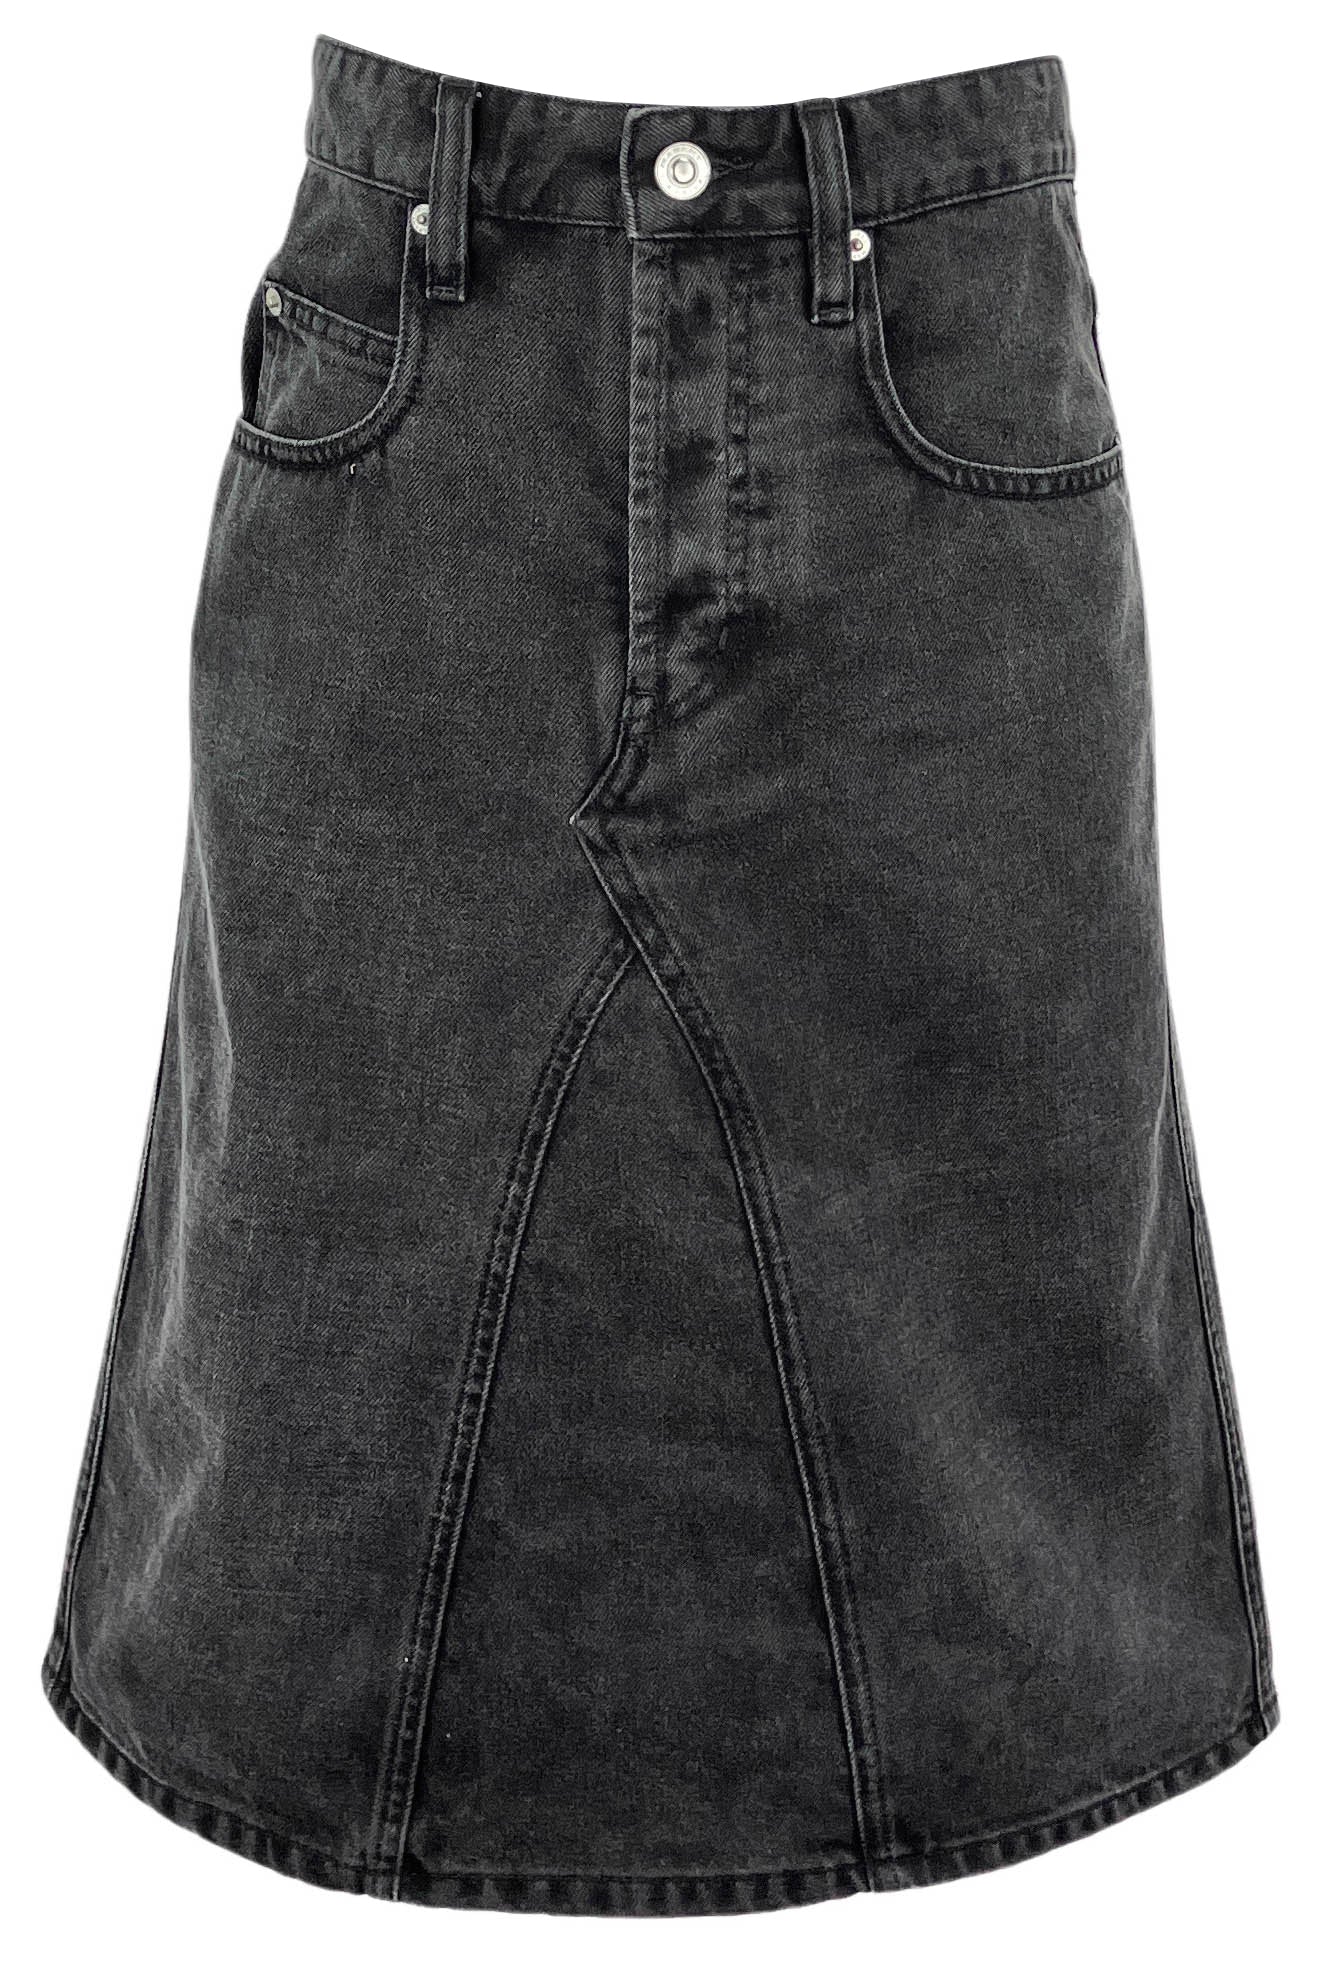 Isabel Marant Etoile Fiali Denim Midi Skirt in Washed Black - Discounts on Isabel Marant at UAL